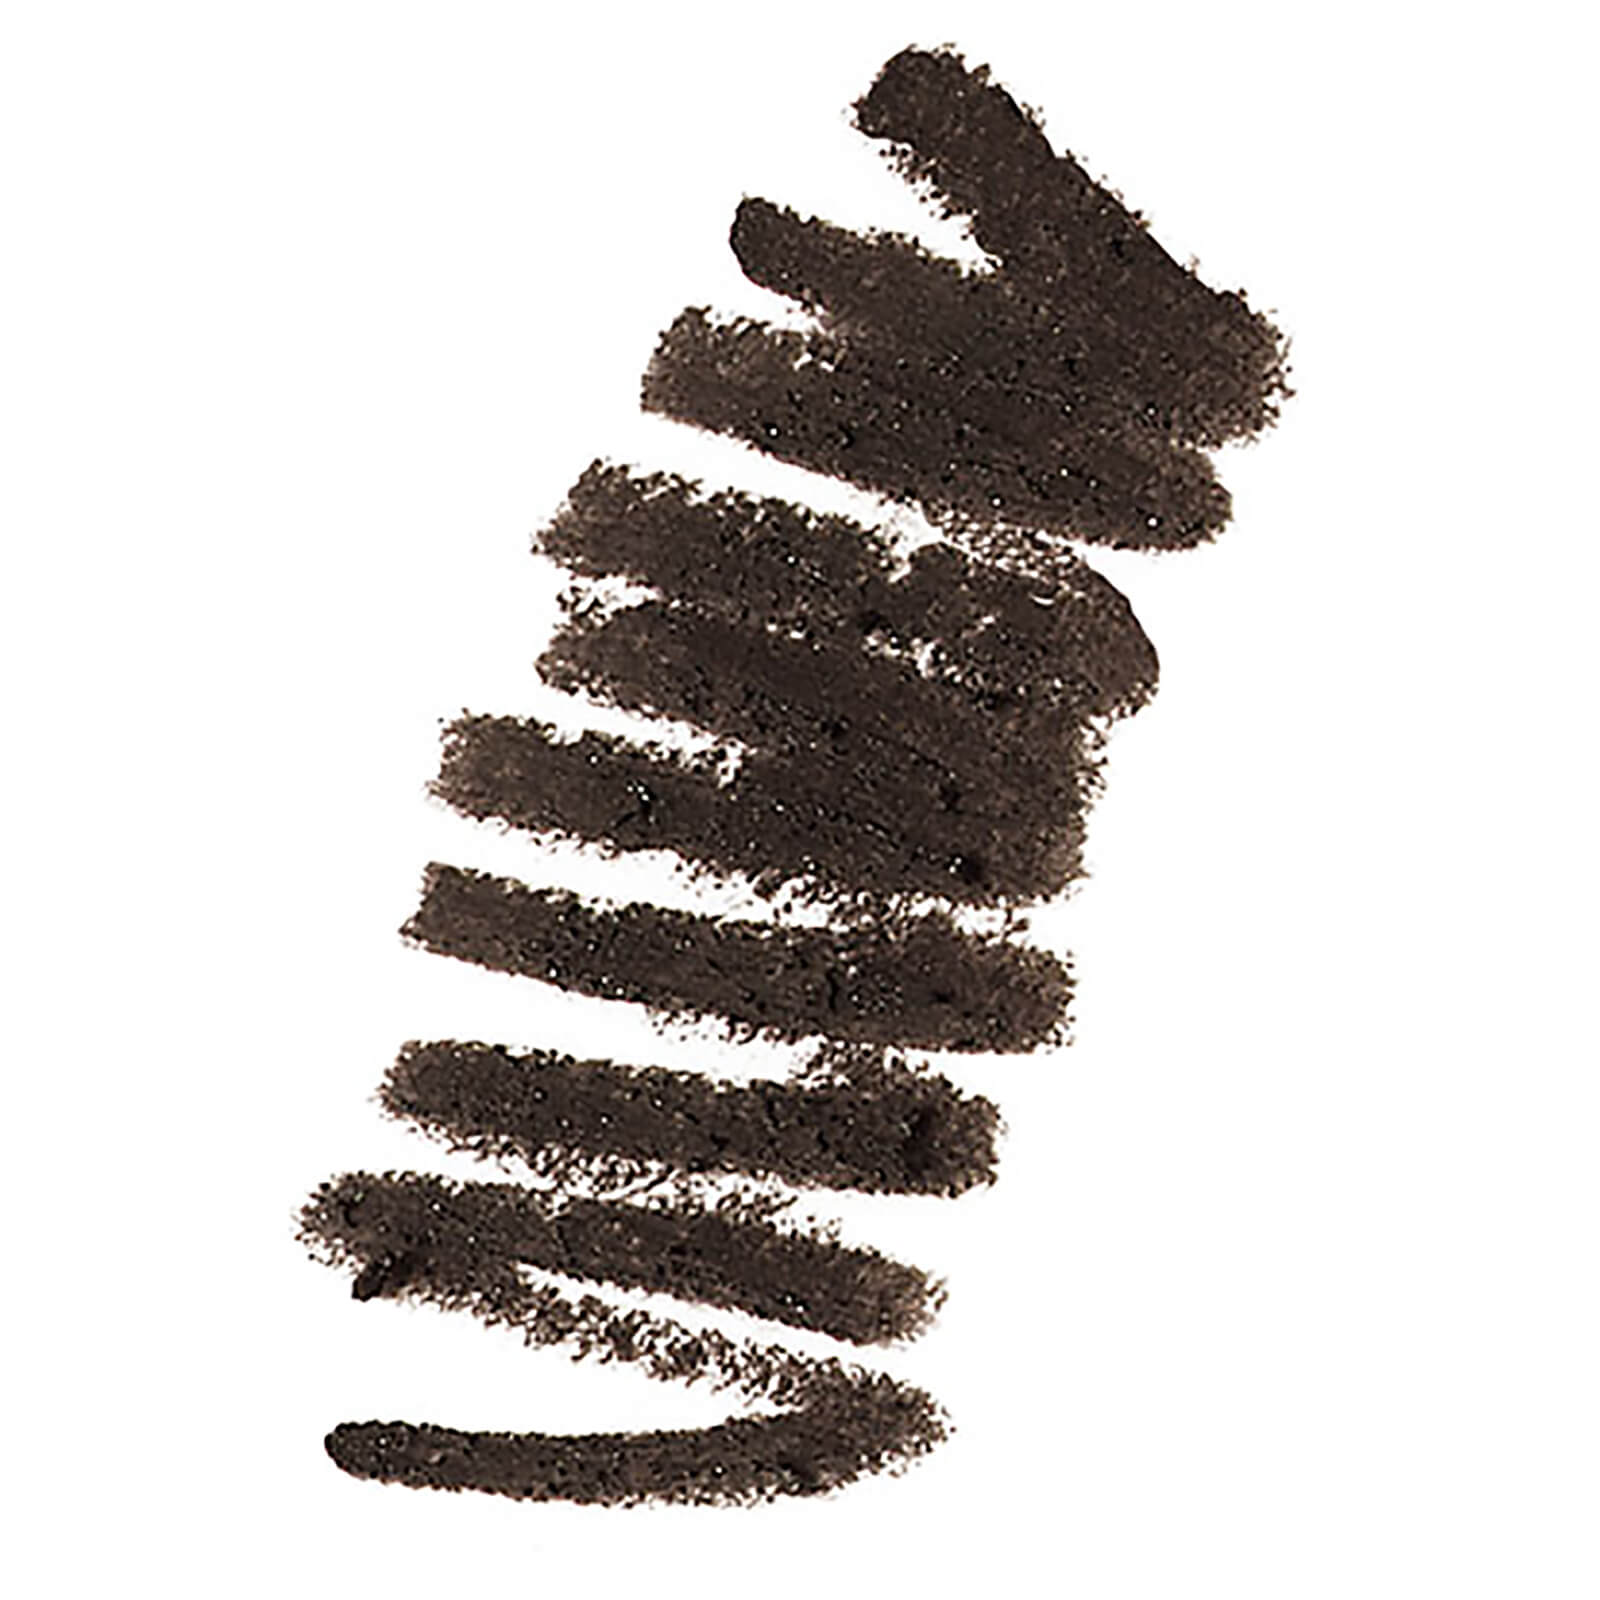 Bobbi Brown Long-Wear Waterproof Liner (Various Shades) - Black Chocolate